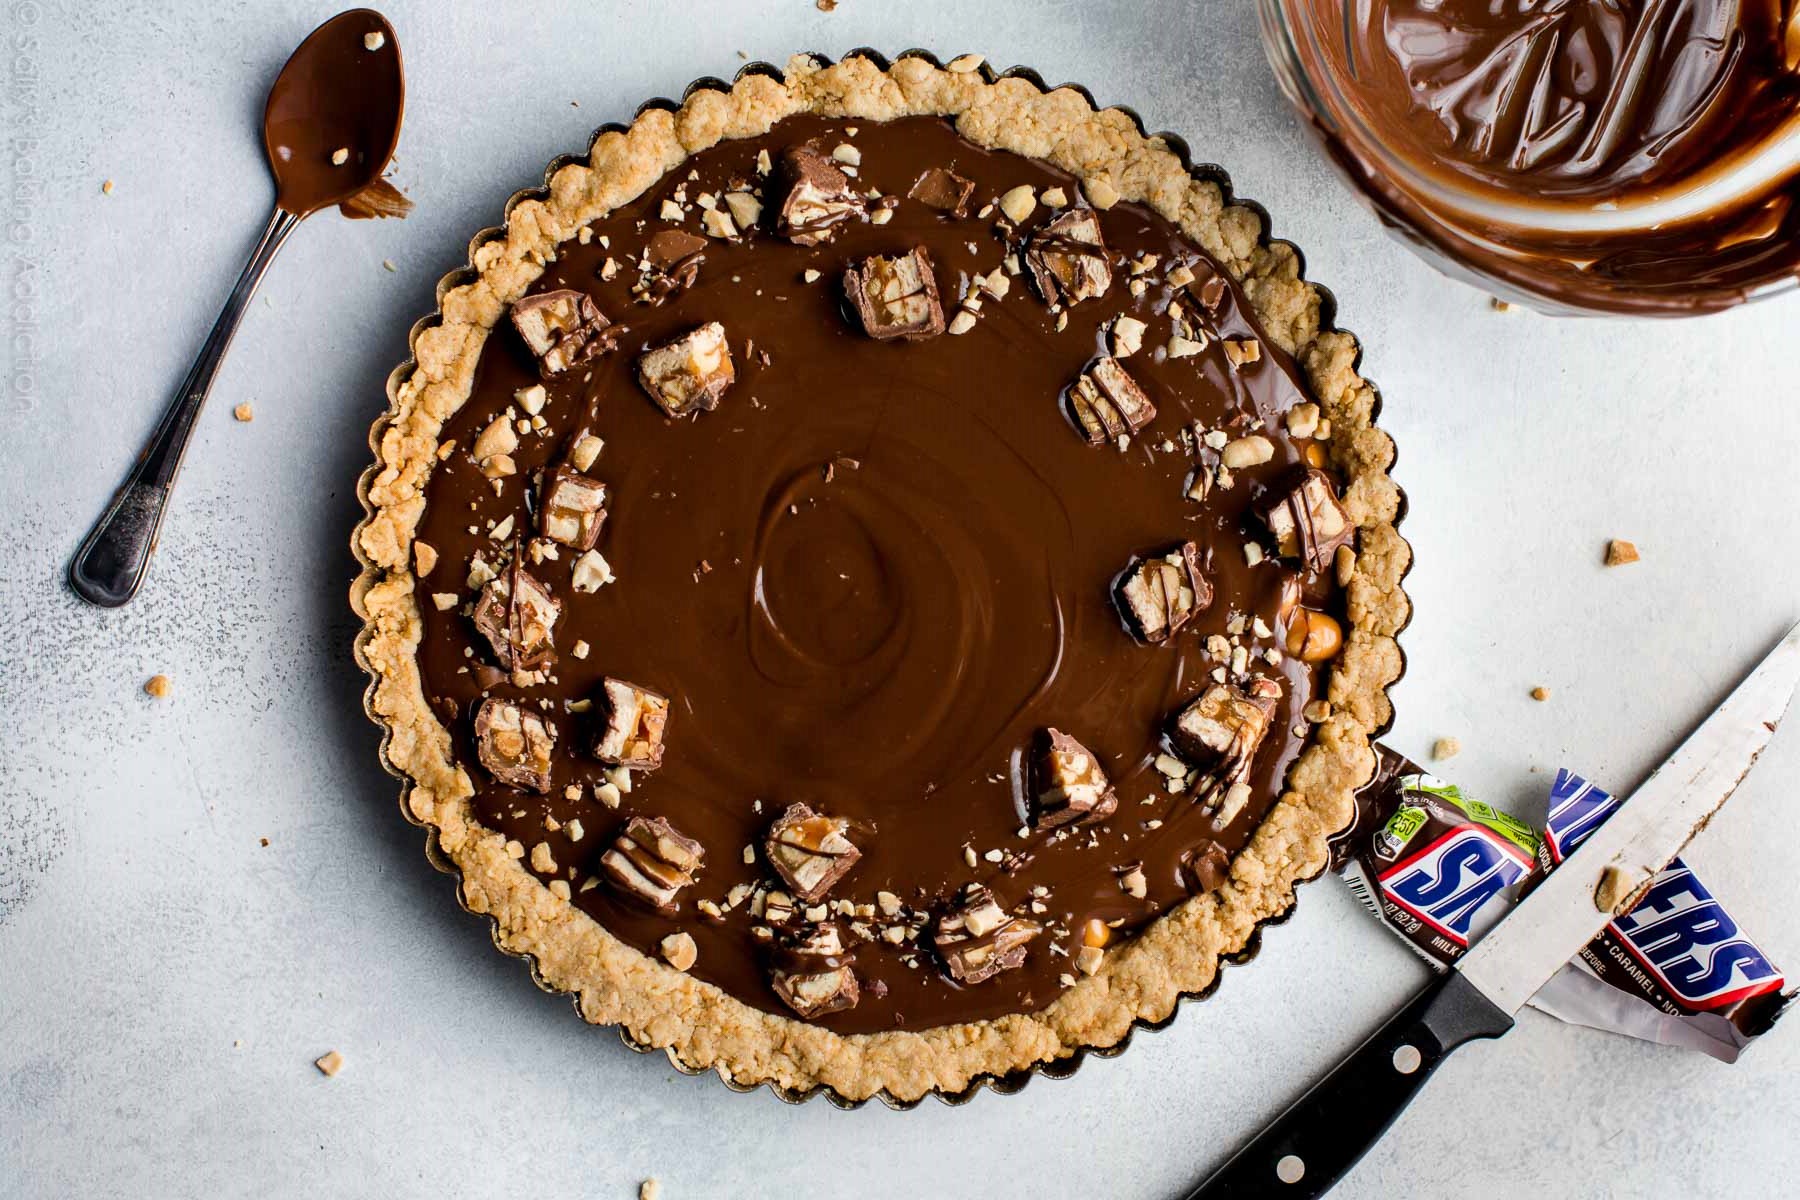 ¿Amante de los Snickers? ¡Con esta receta prepararás una tarta de snicker's en 15 minutos!